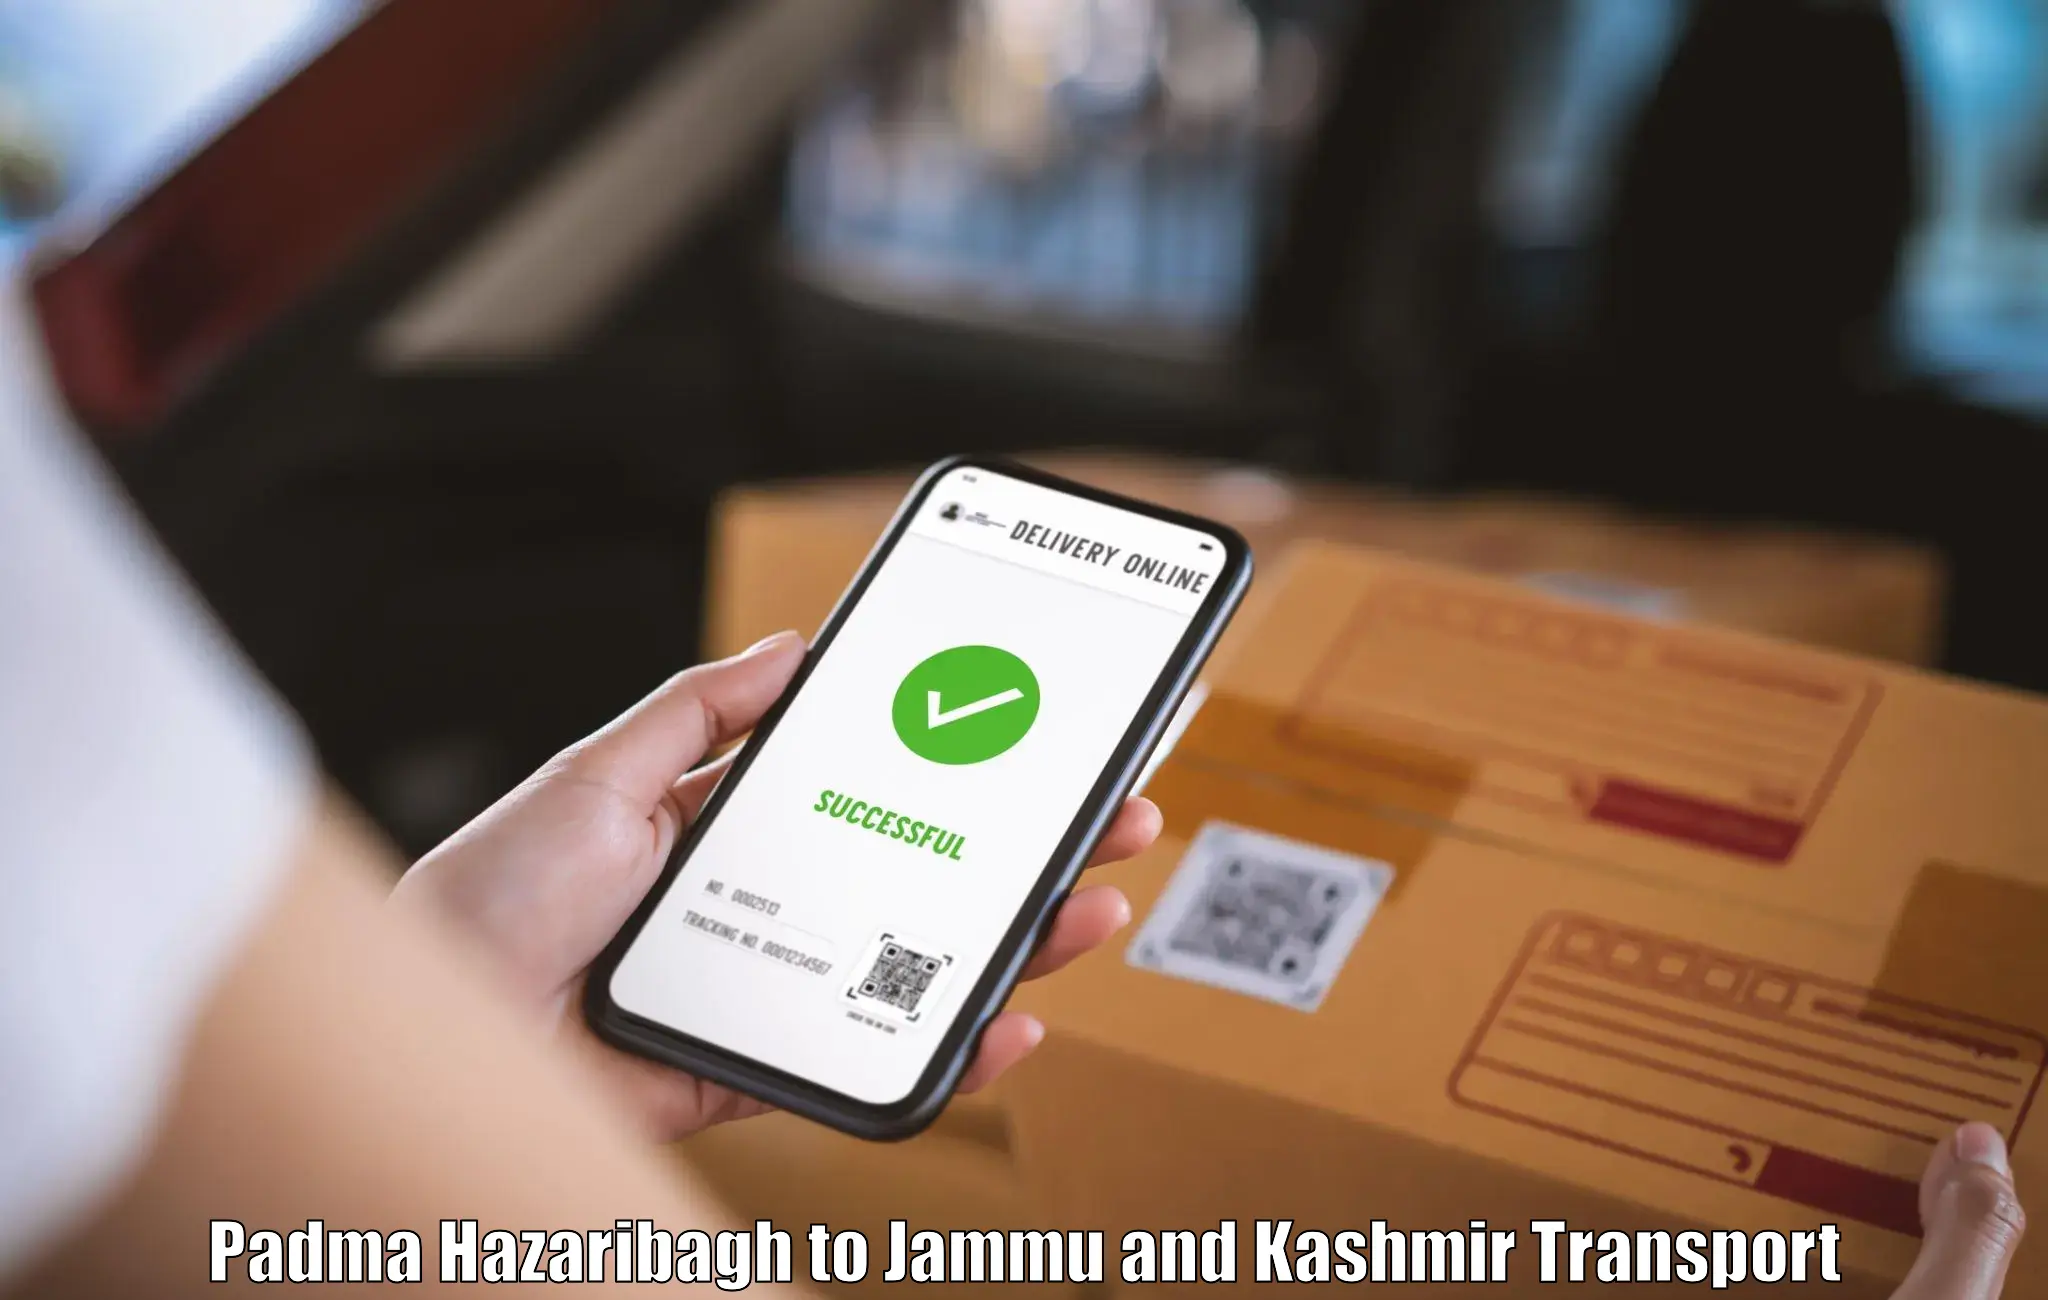 Delivery service Padma Hazaribagh to Kargil